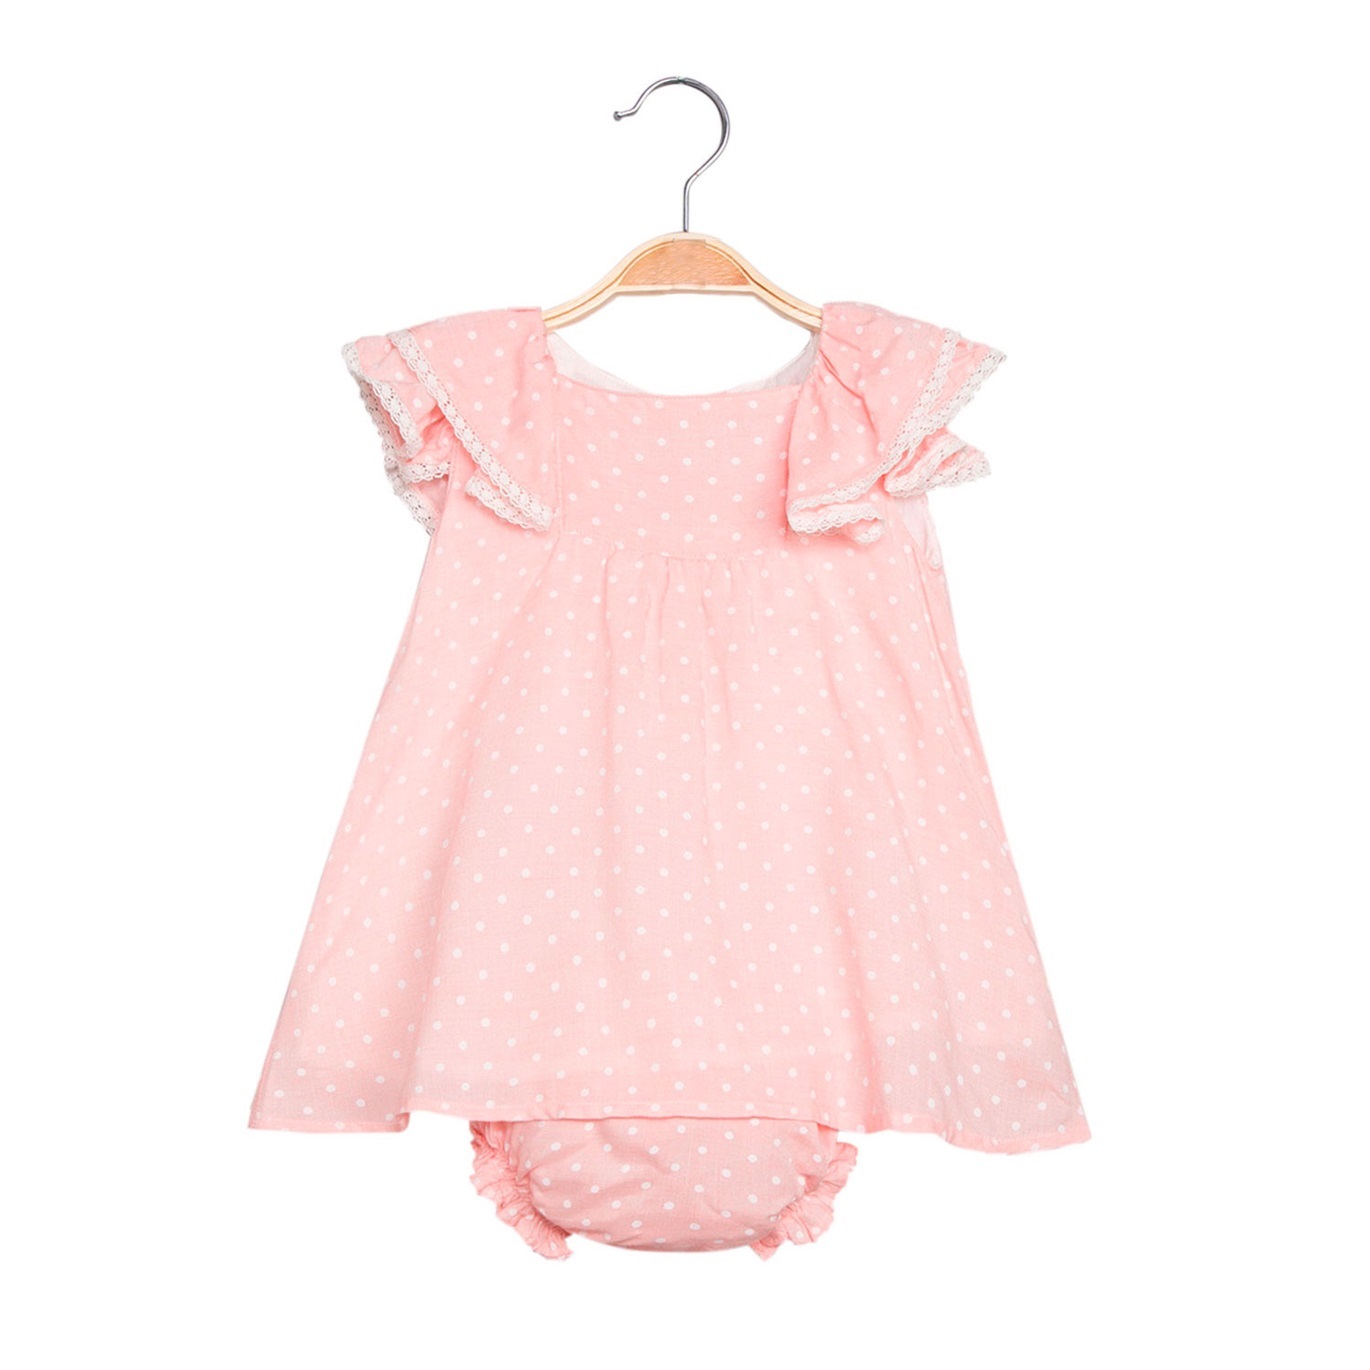 Imagen de Vestido de bebé niña en rosa claro con braguita